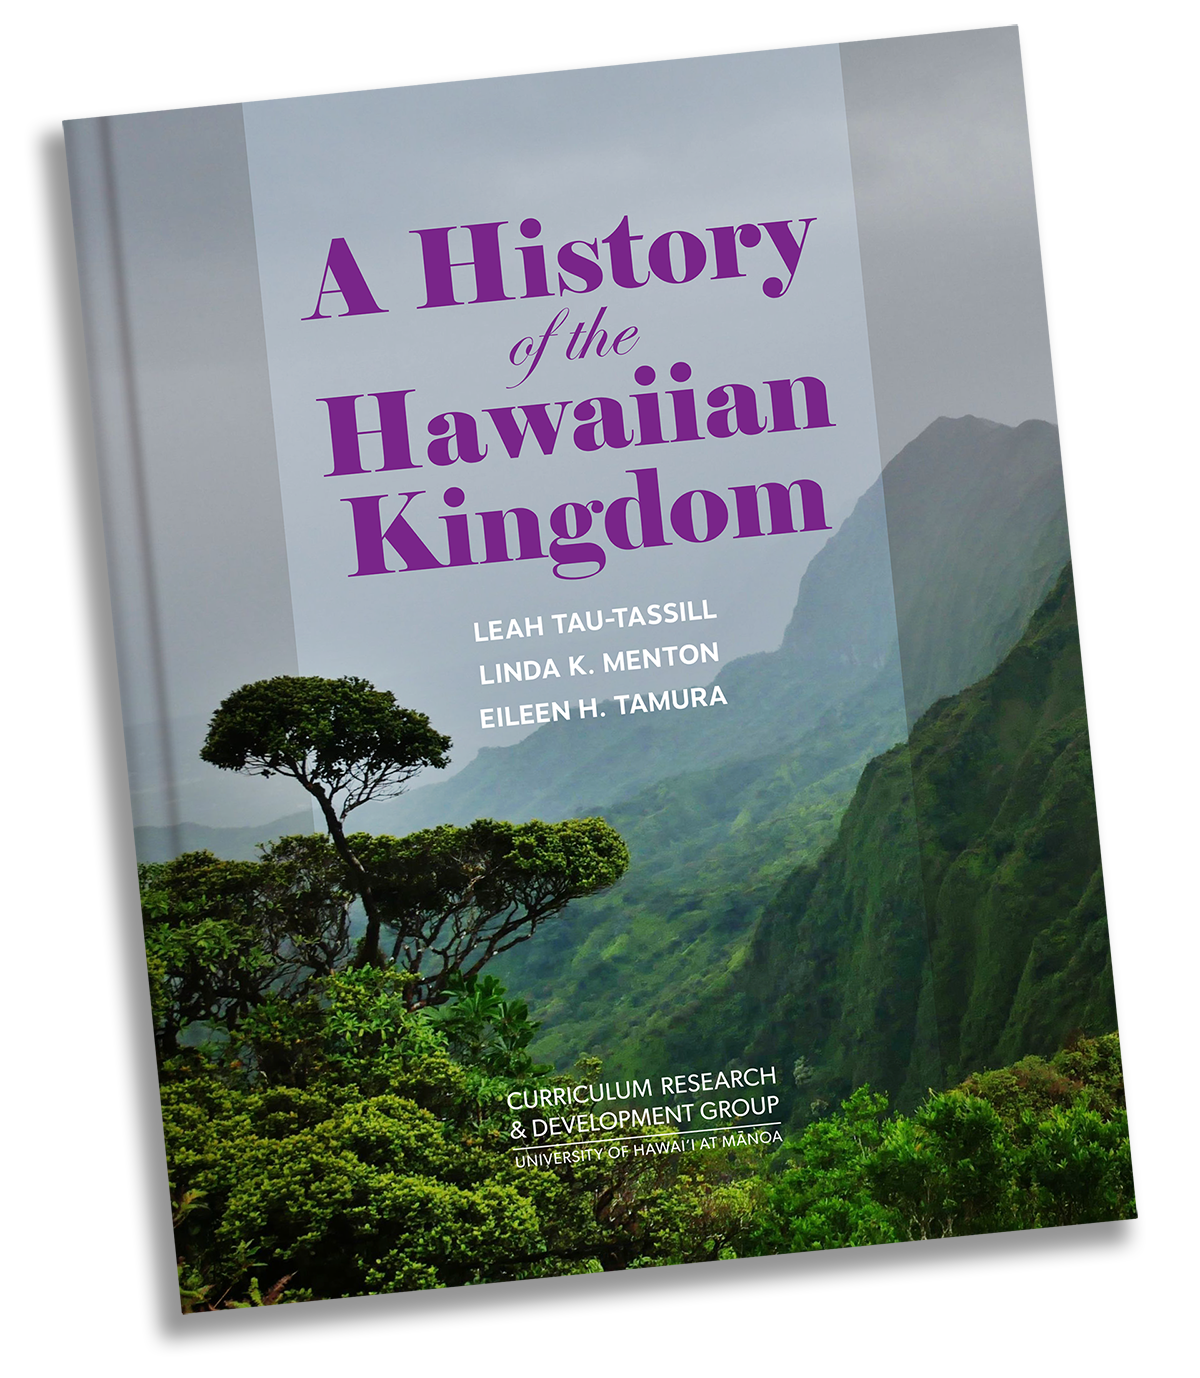 history of the hawaiian kingdom book cover